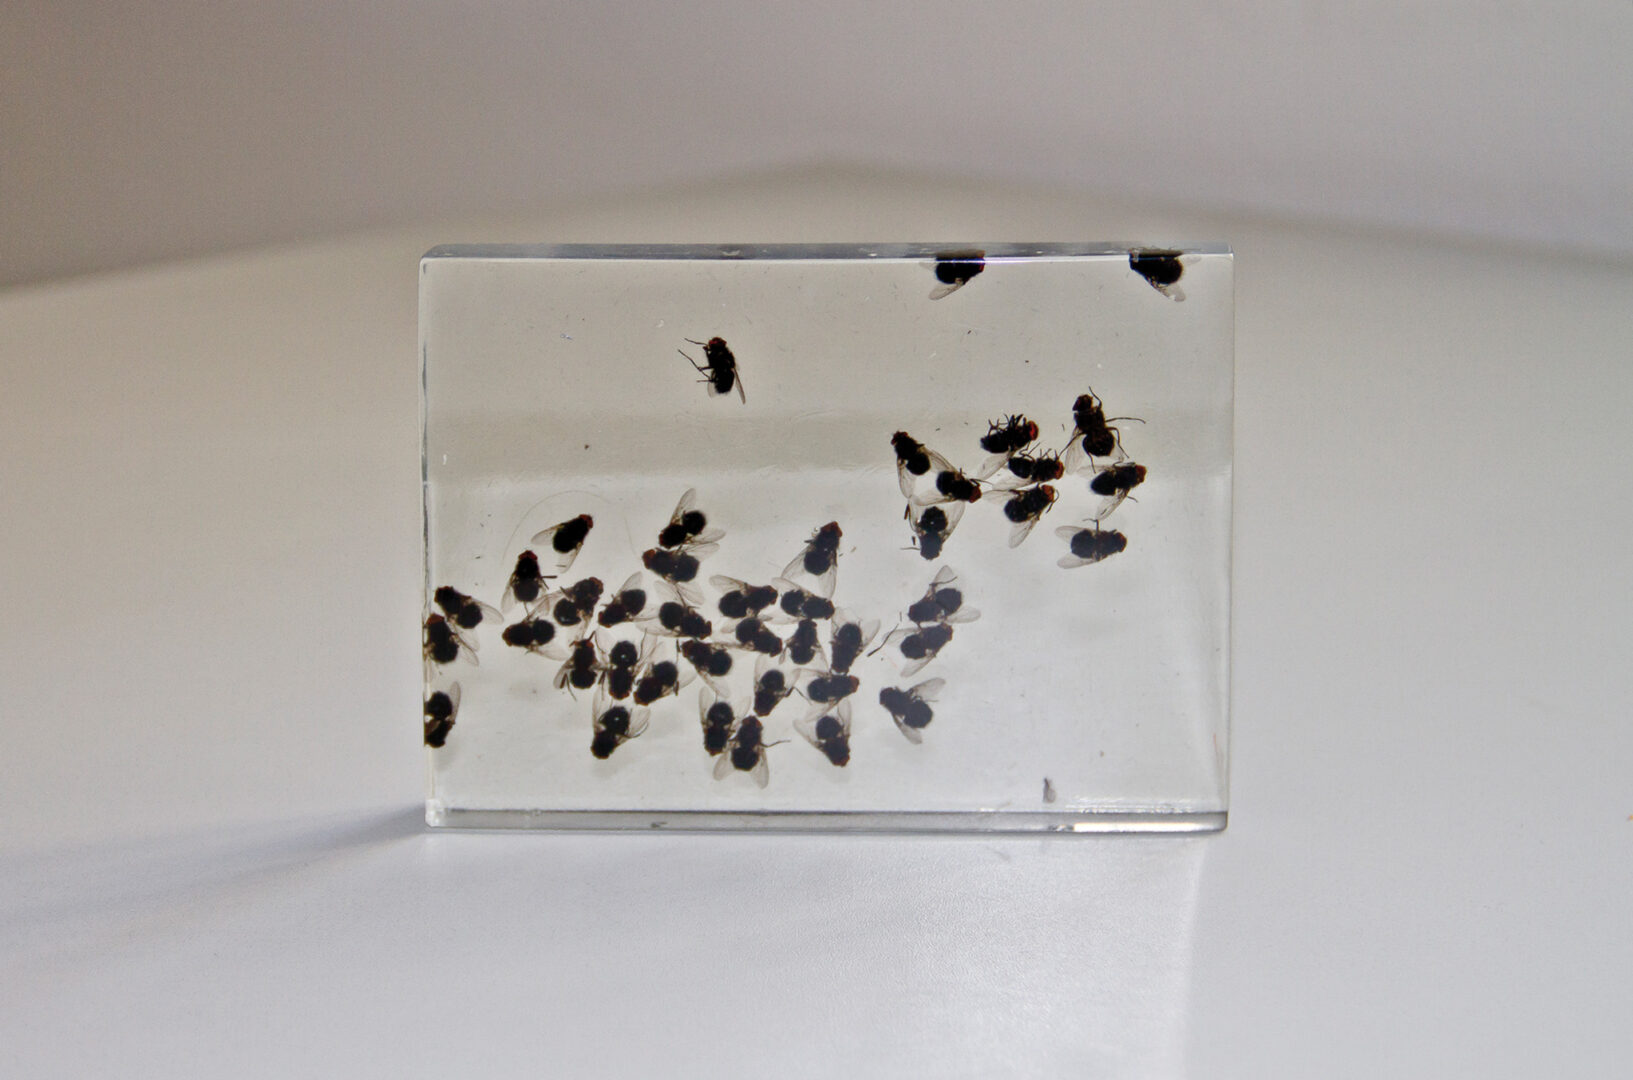 fliegen, 2012, 4 objekte, jeweils 10 cm x 15 cm x 2 cm